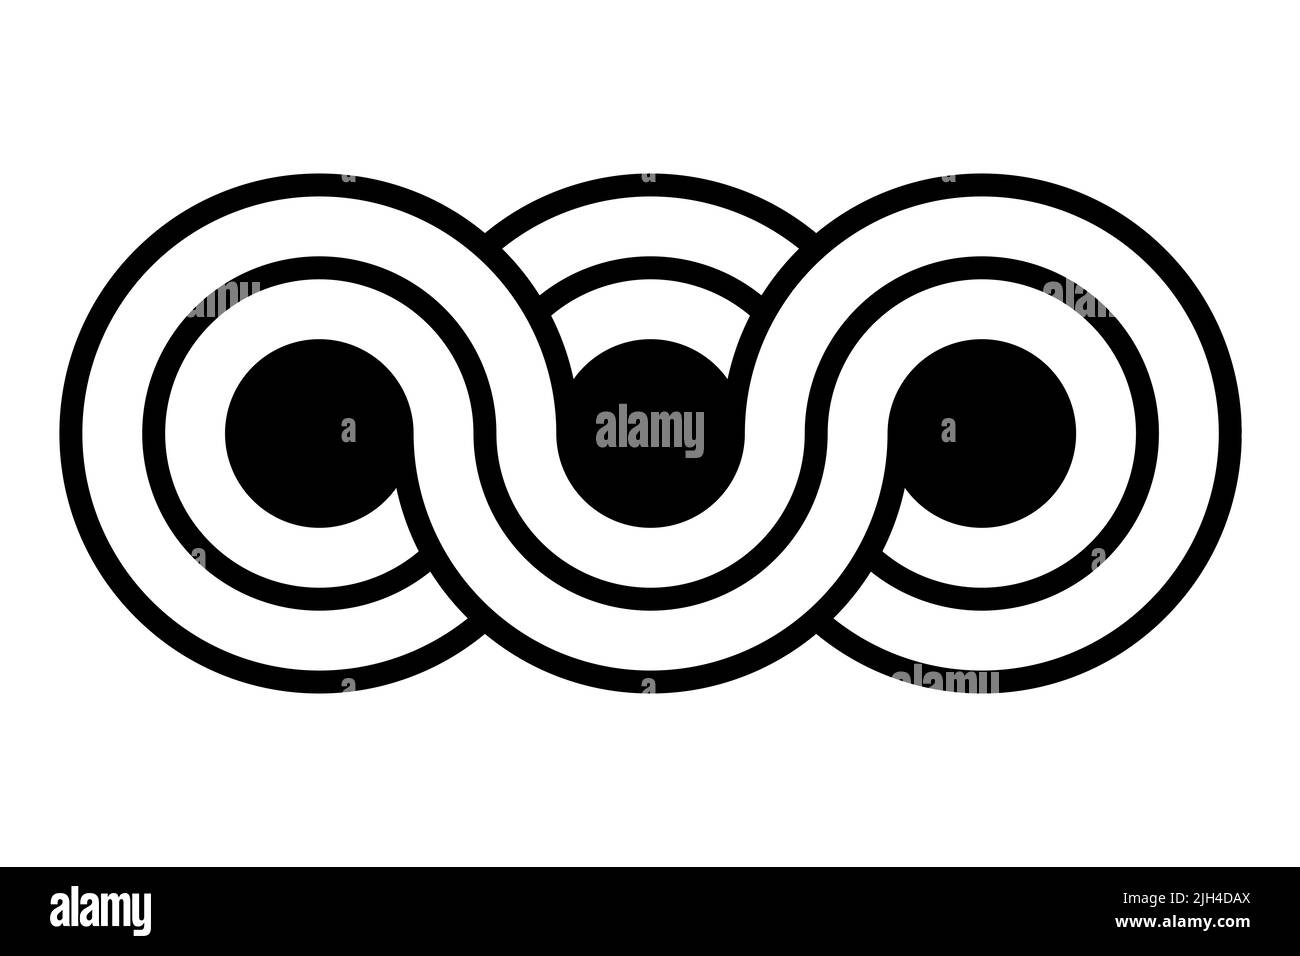 Simbolo infinito triplo. Tre cerchi con linee di confine sfalsate, collegati tra loro in modo ondulato e ad anello, esprimenti l'infinito. Foto Stock